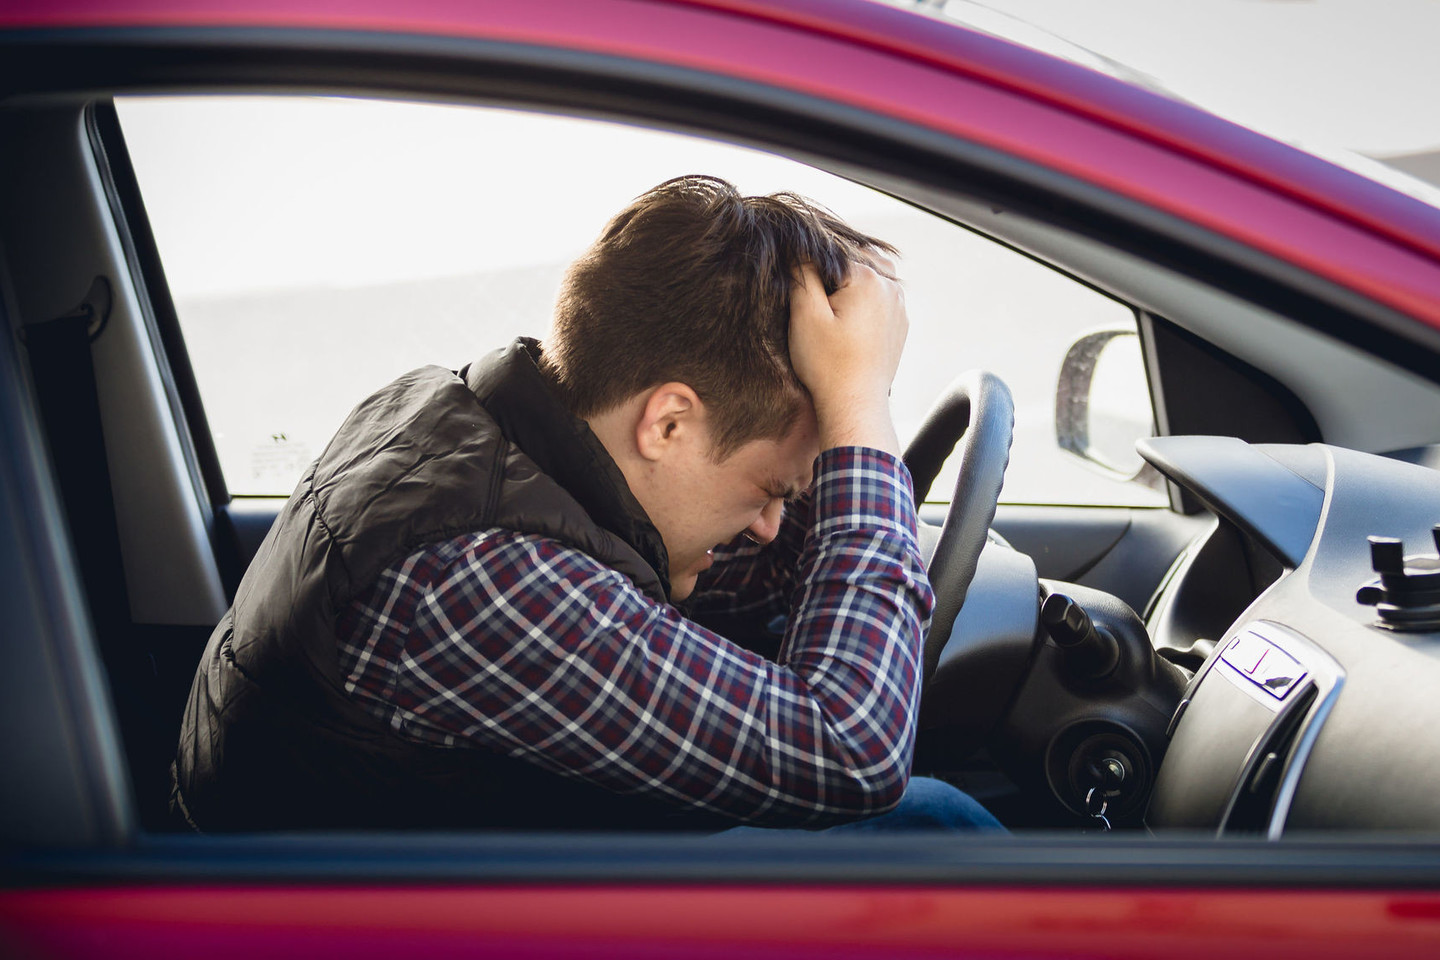 Naujasis tyrimas skirtas išsiaiškinti, ar vairuotojas nerizikuoja užmigti prie vairo.<br>123rf.com asociatyvi nuotr.